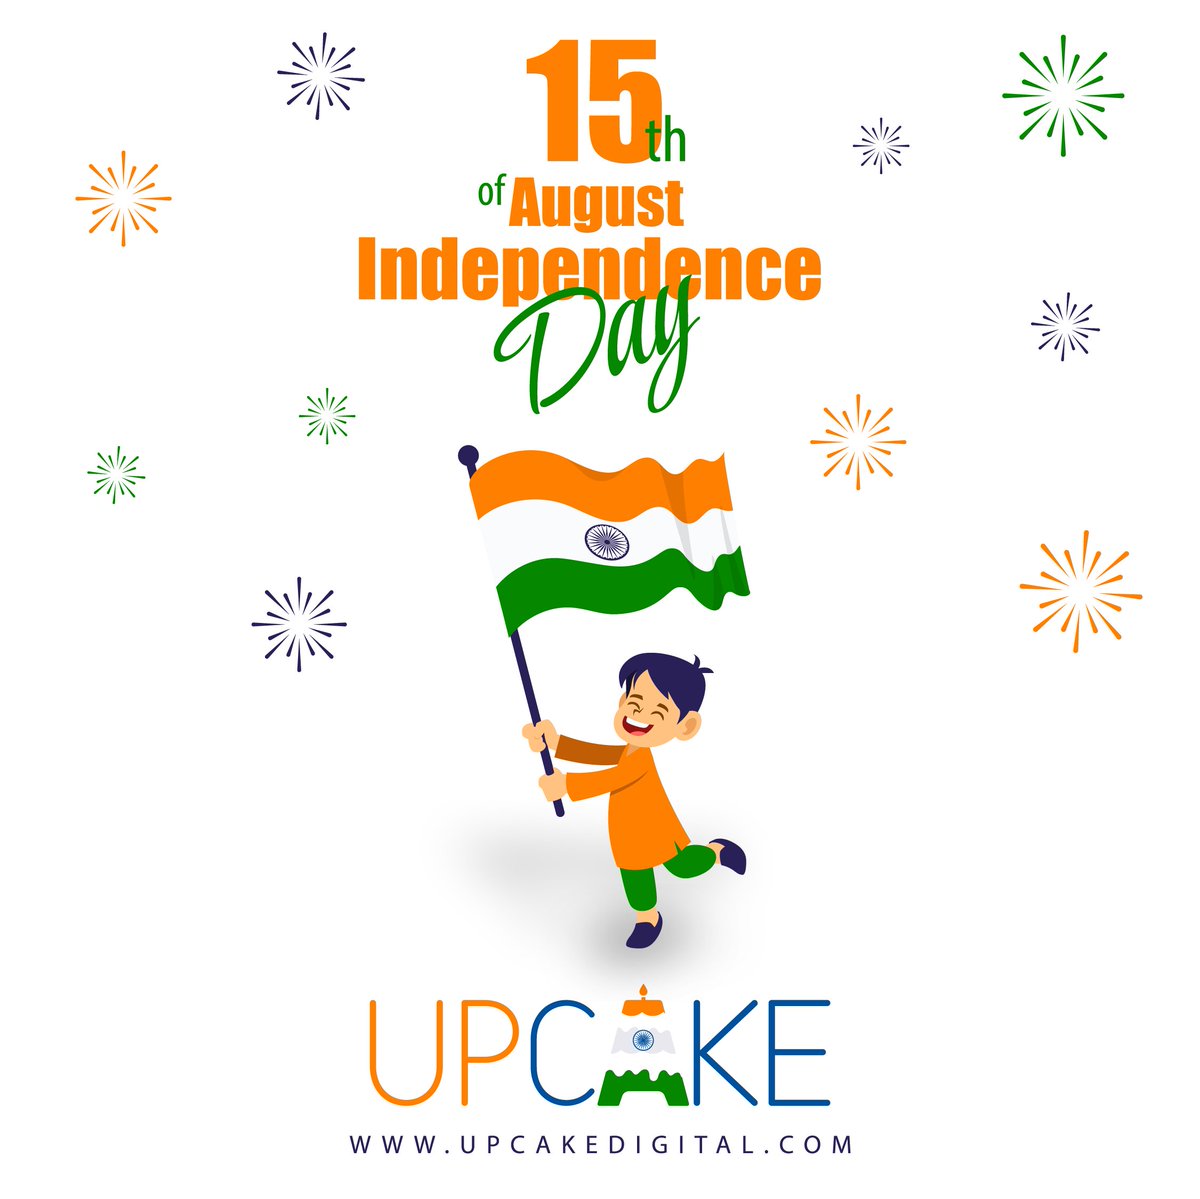 Happy 77th Independence day India 🎉✨

#independenceday #UpCake #celebration #cake #India #canada #happyindependenceday #orderonline #cake #bakery #bakeryshop #cakeshop #customcakes #designercakes #cakedesign #homebaker #homebakedcake #cakedecorating #cakebaker